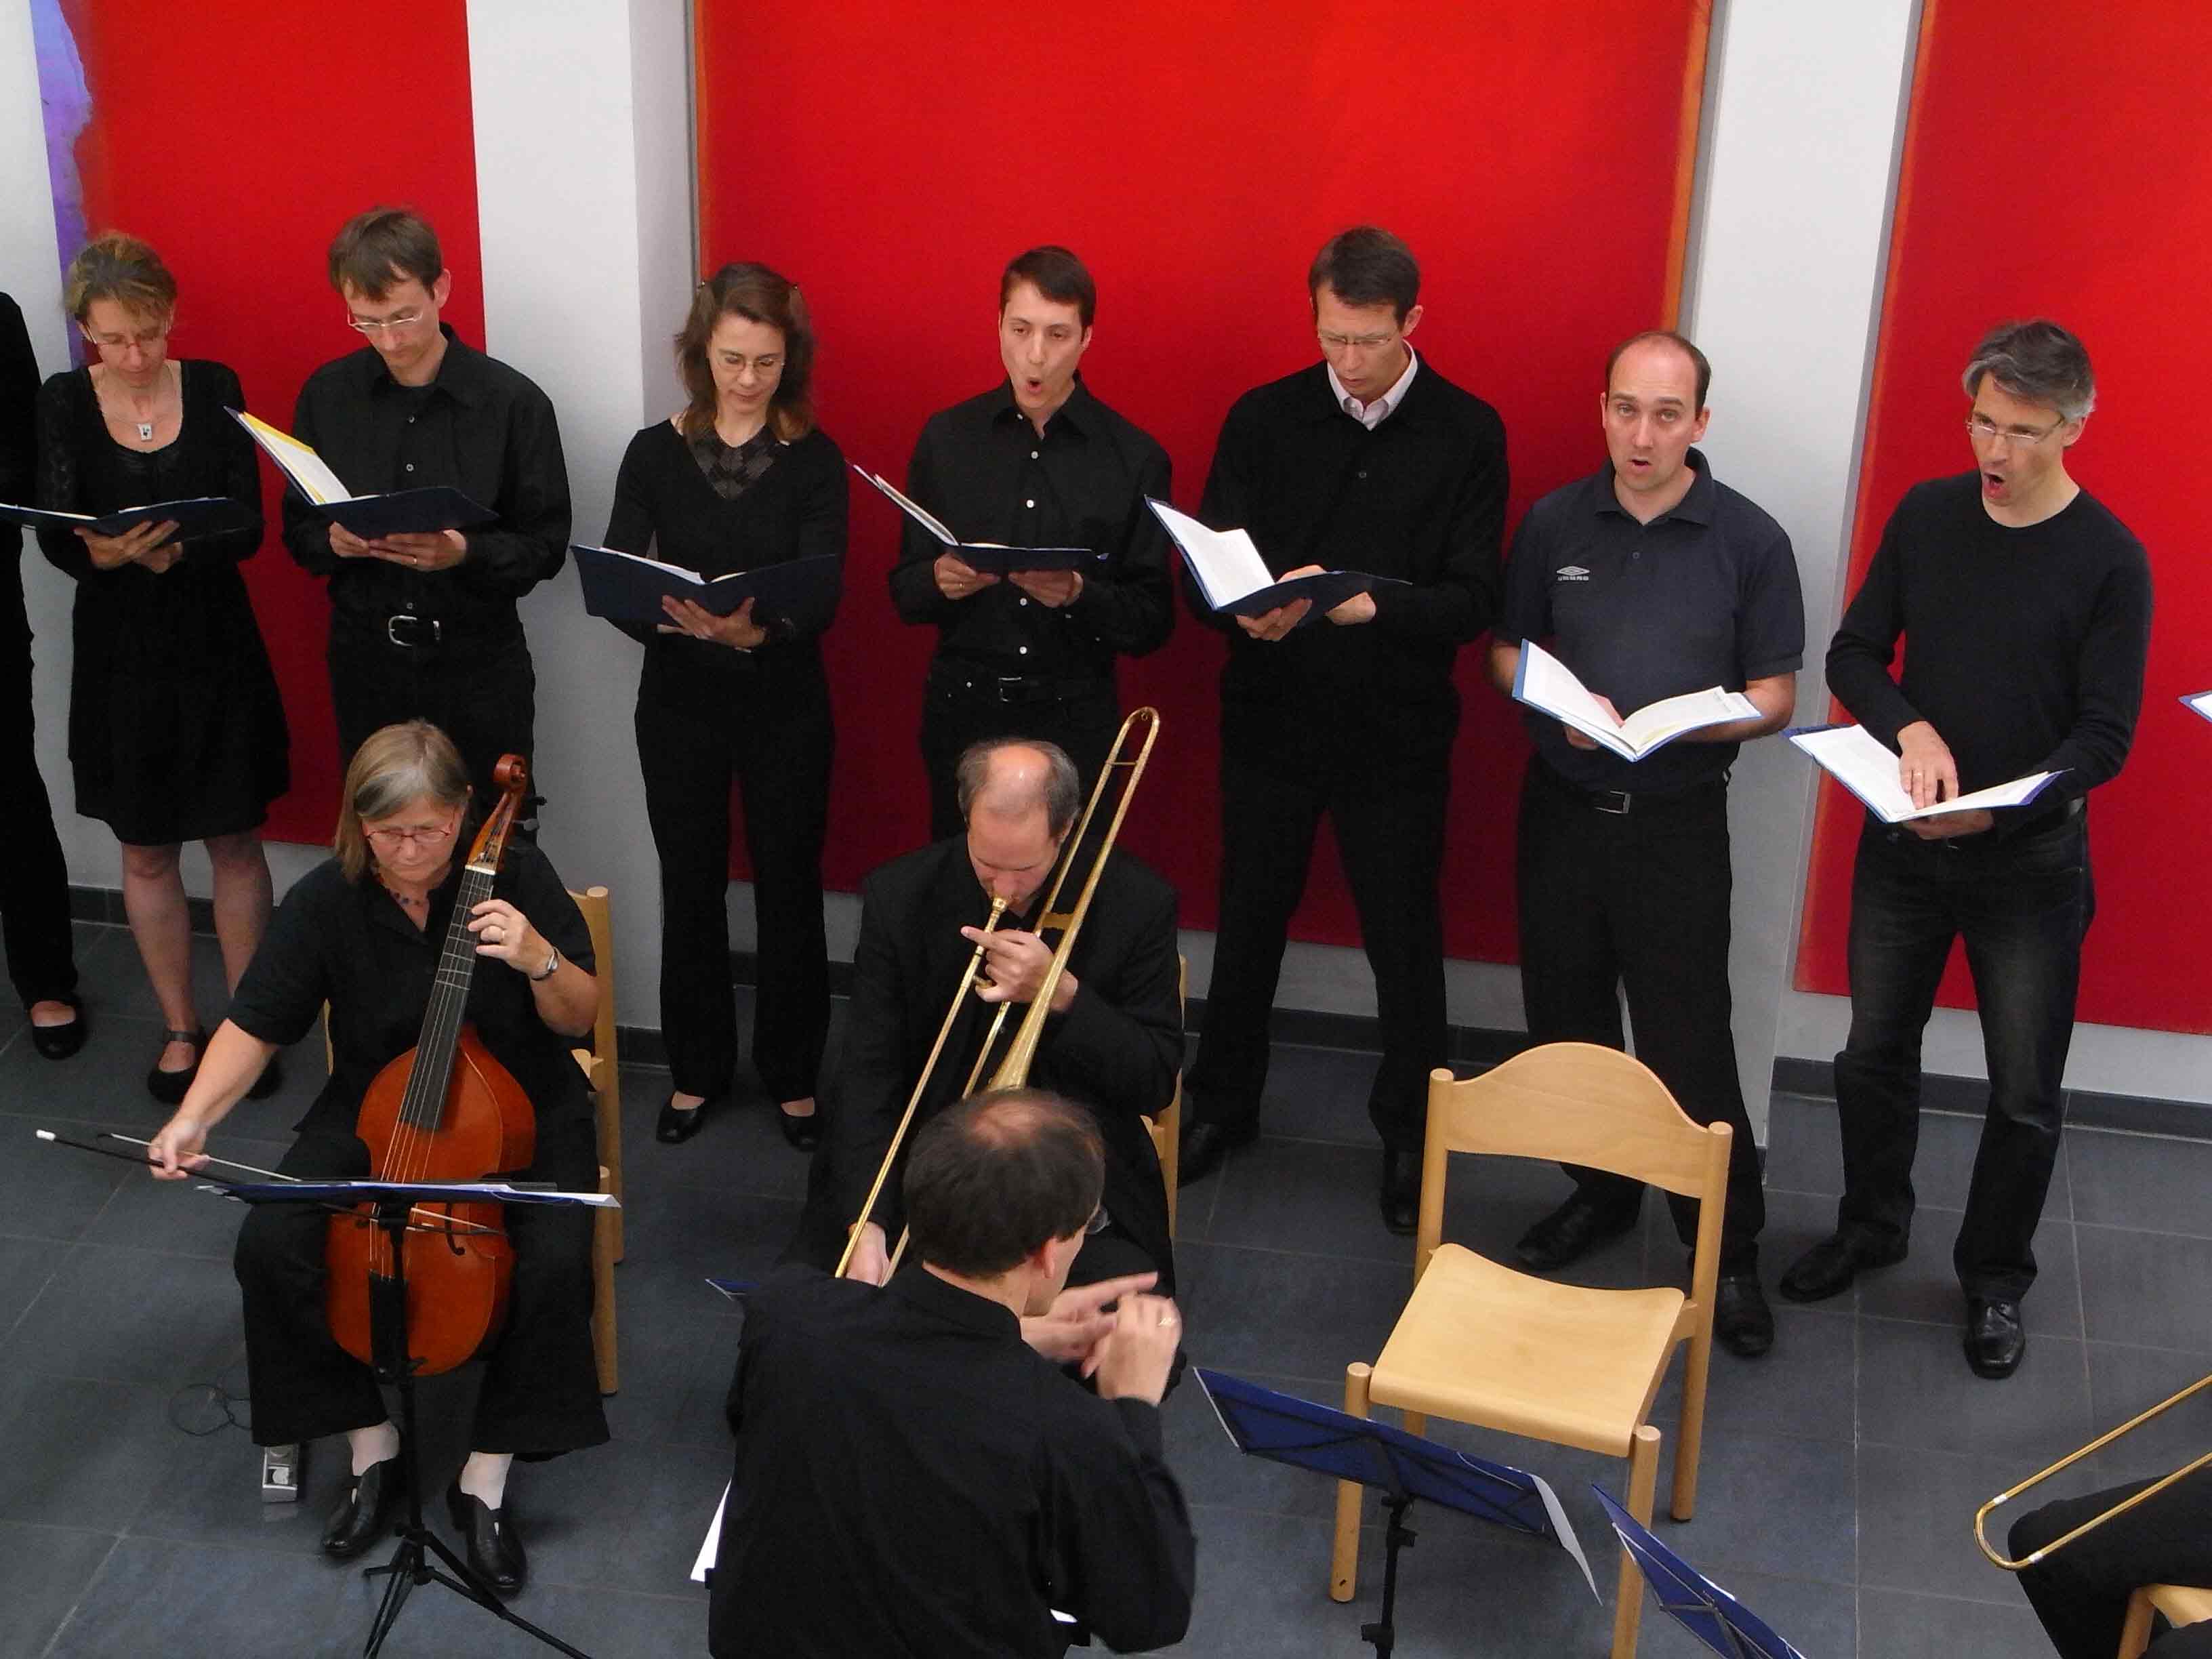 Foto vom Chor Canticolino zusammen mit dem Cordaria-Ensemble in der Dietrich-Bonhoeffer-Kirche am 25. Juli 2010